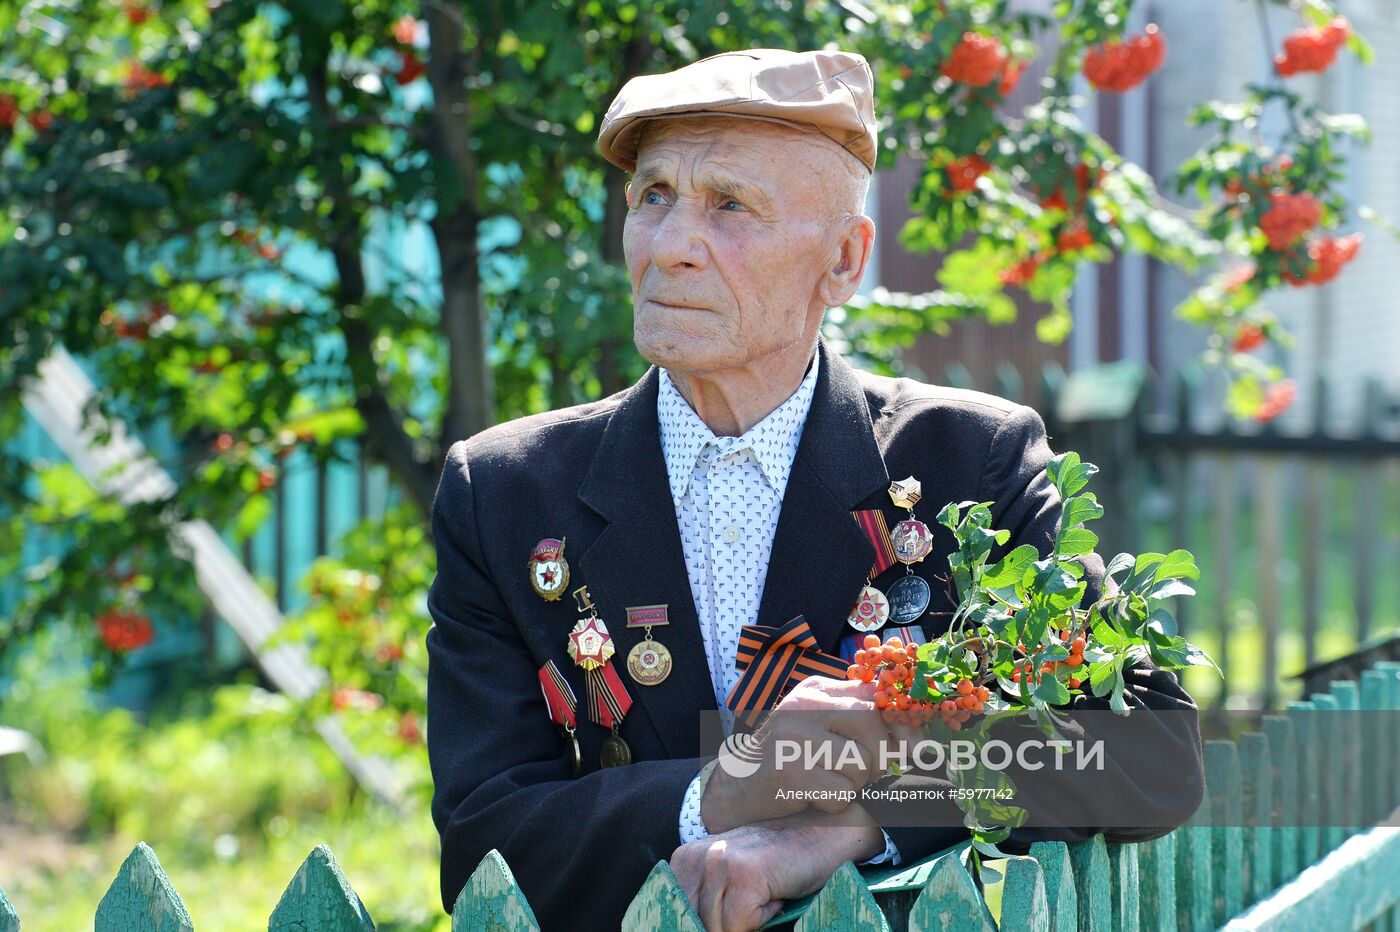 Ветеран Великой Отечественной войны И.В. Мещеряков